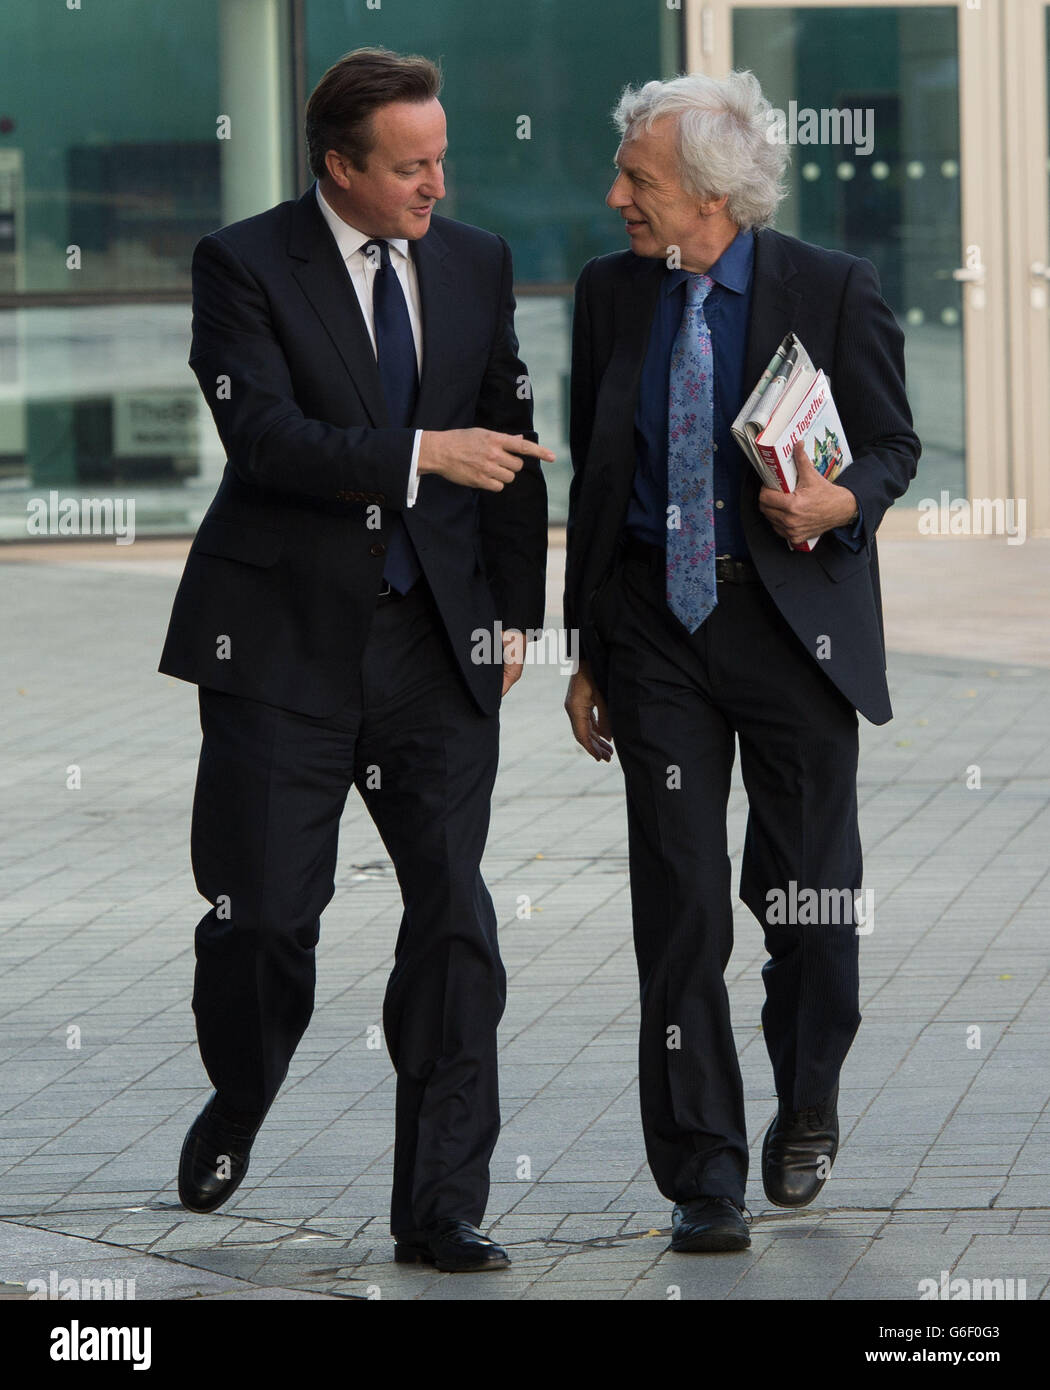 El primer ministro David Cameron (izquierda) llegó para el programa de asuntos actuales de la BBC, el show de Andrew Marr en Manchester, antes del inicio de la conferencia anual del Partido Conservador. Foto de stock